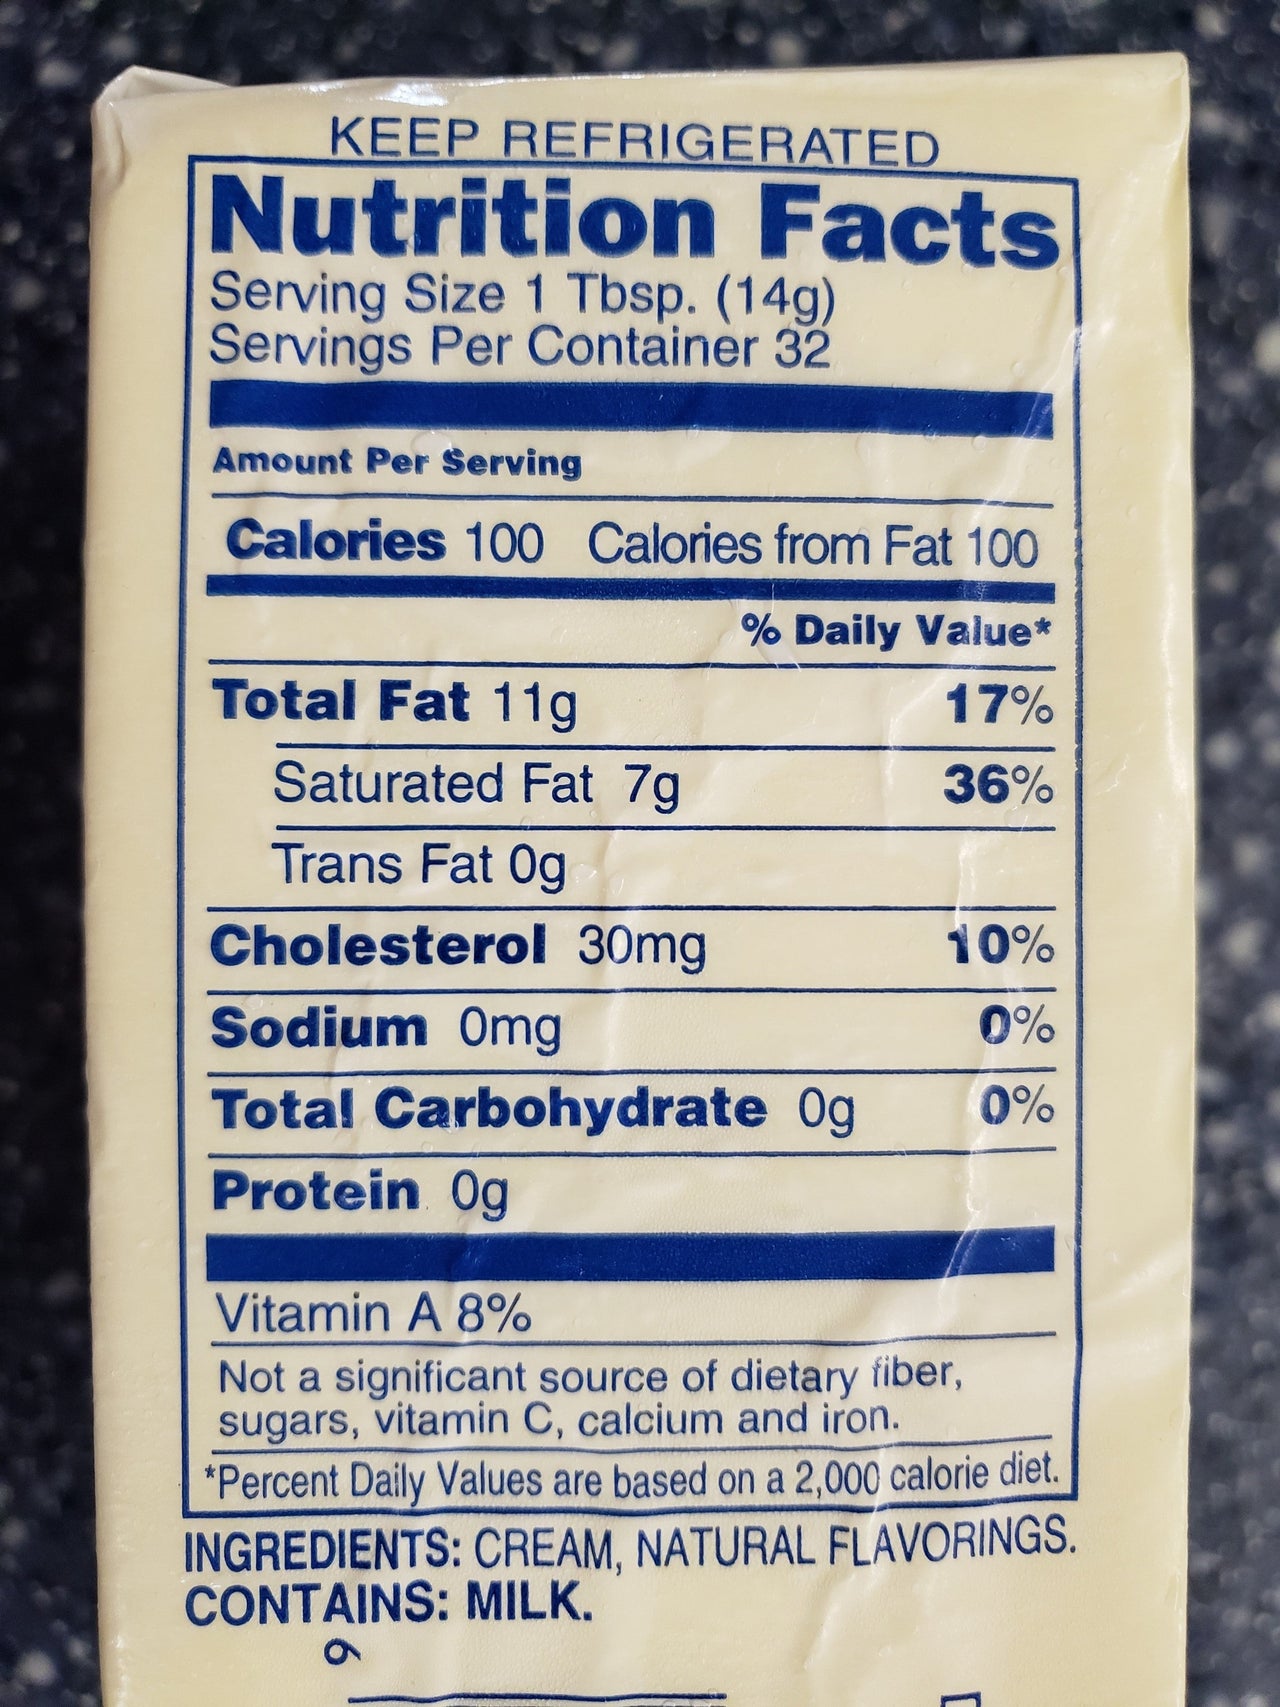 Beurremont 83% Butter Fat, UNSALTED - Bar Grass Fed / Block 16 oz - Circle C Farm